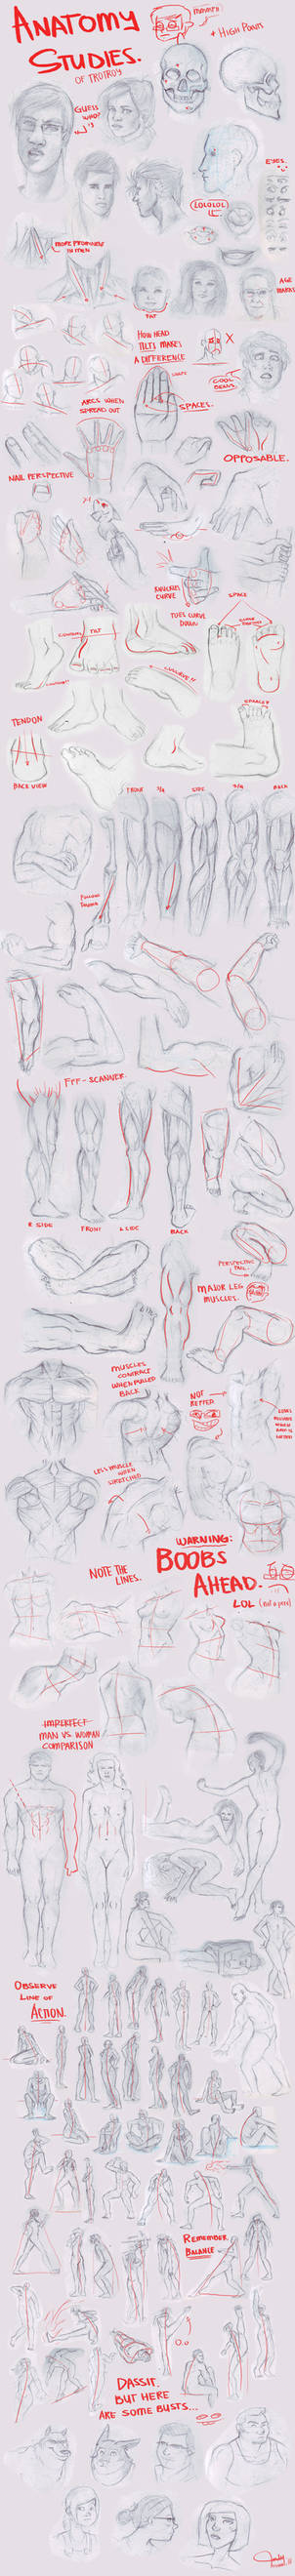 Anatomy Studies